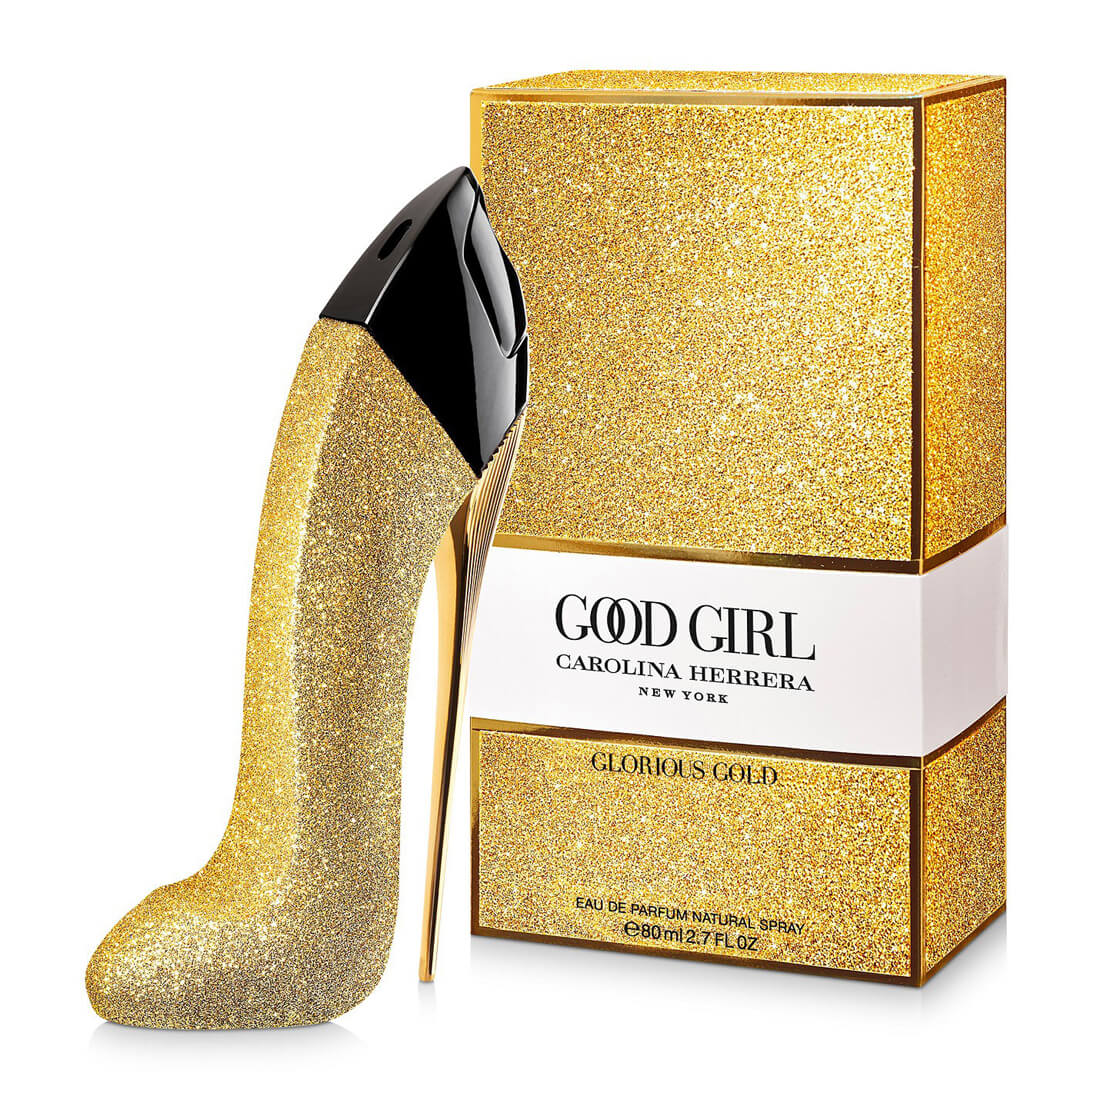 Carolina Herrera Good Girl Glorious Gold Collector Edition Eau De Perfume 80ml